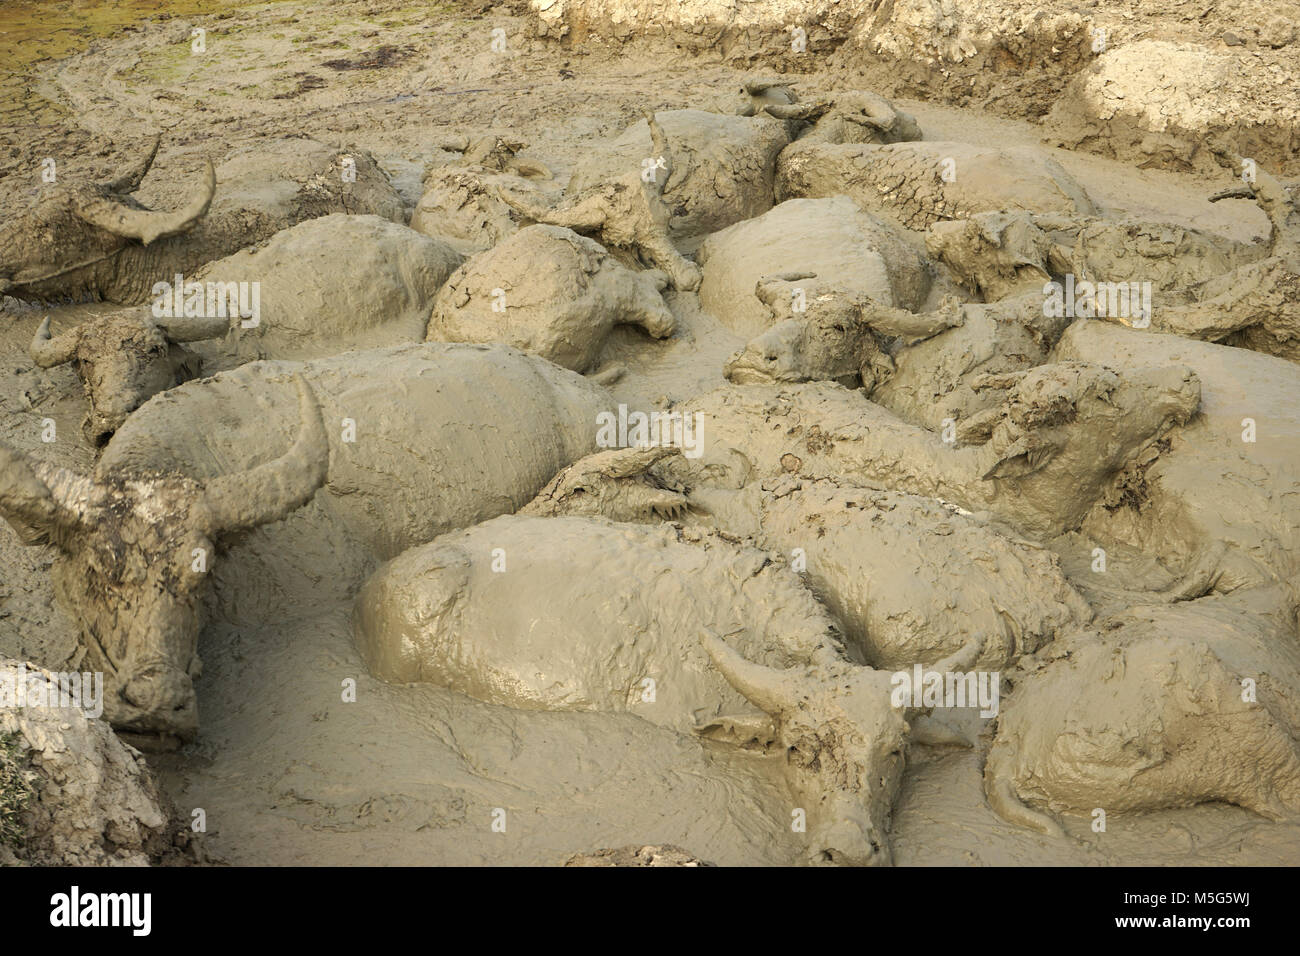 Water Buffalos wallowing in a Mud Pool near Vang Vieng, Laos Stock Photo